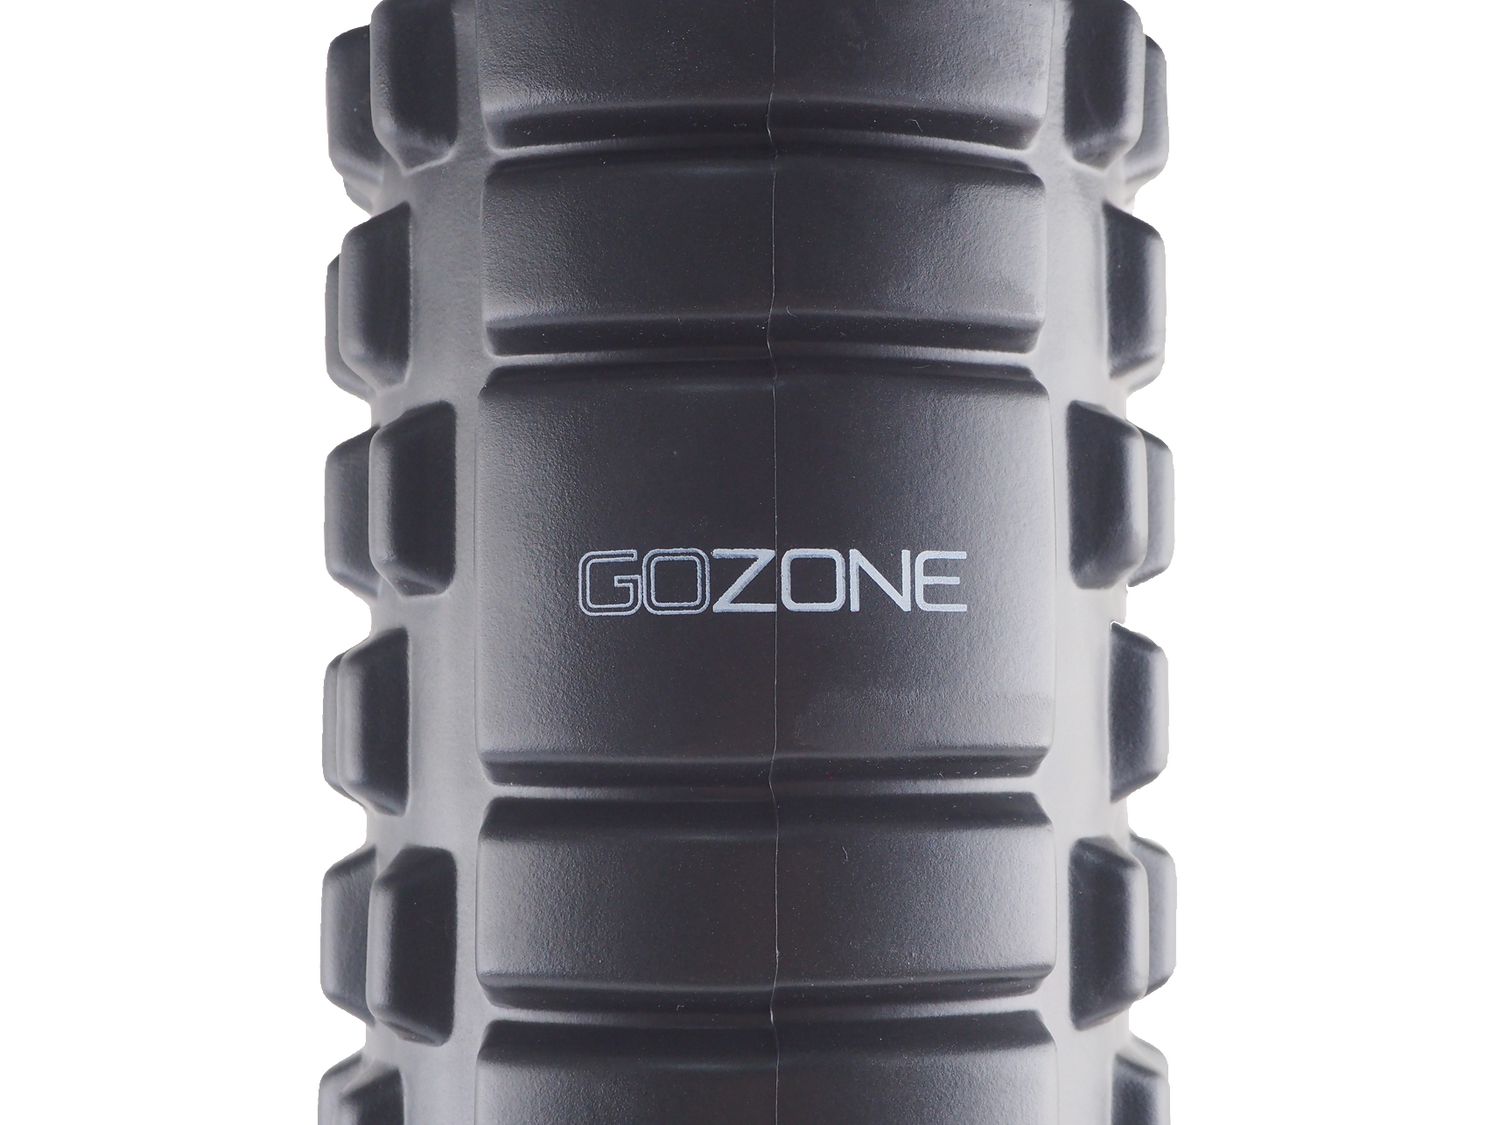 Rouleau en mousse haute densité 61 cm GoZone – Noir Mousse extra